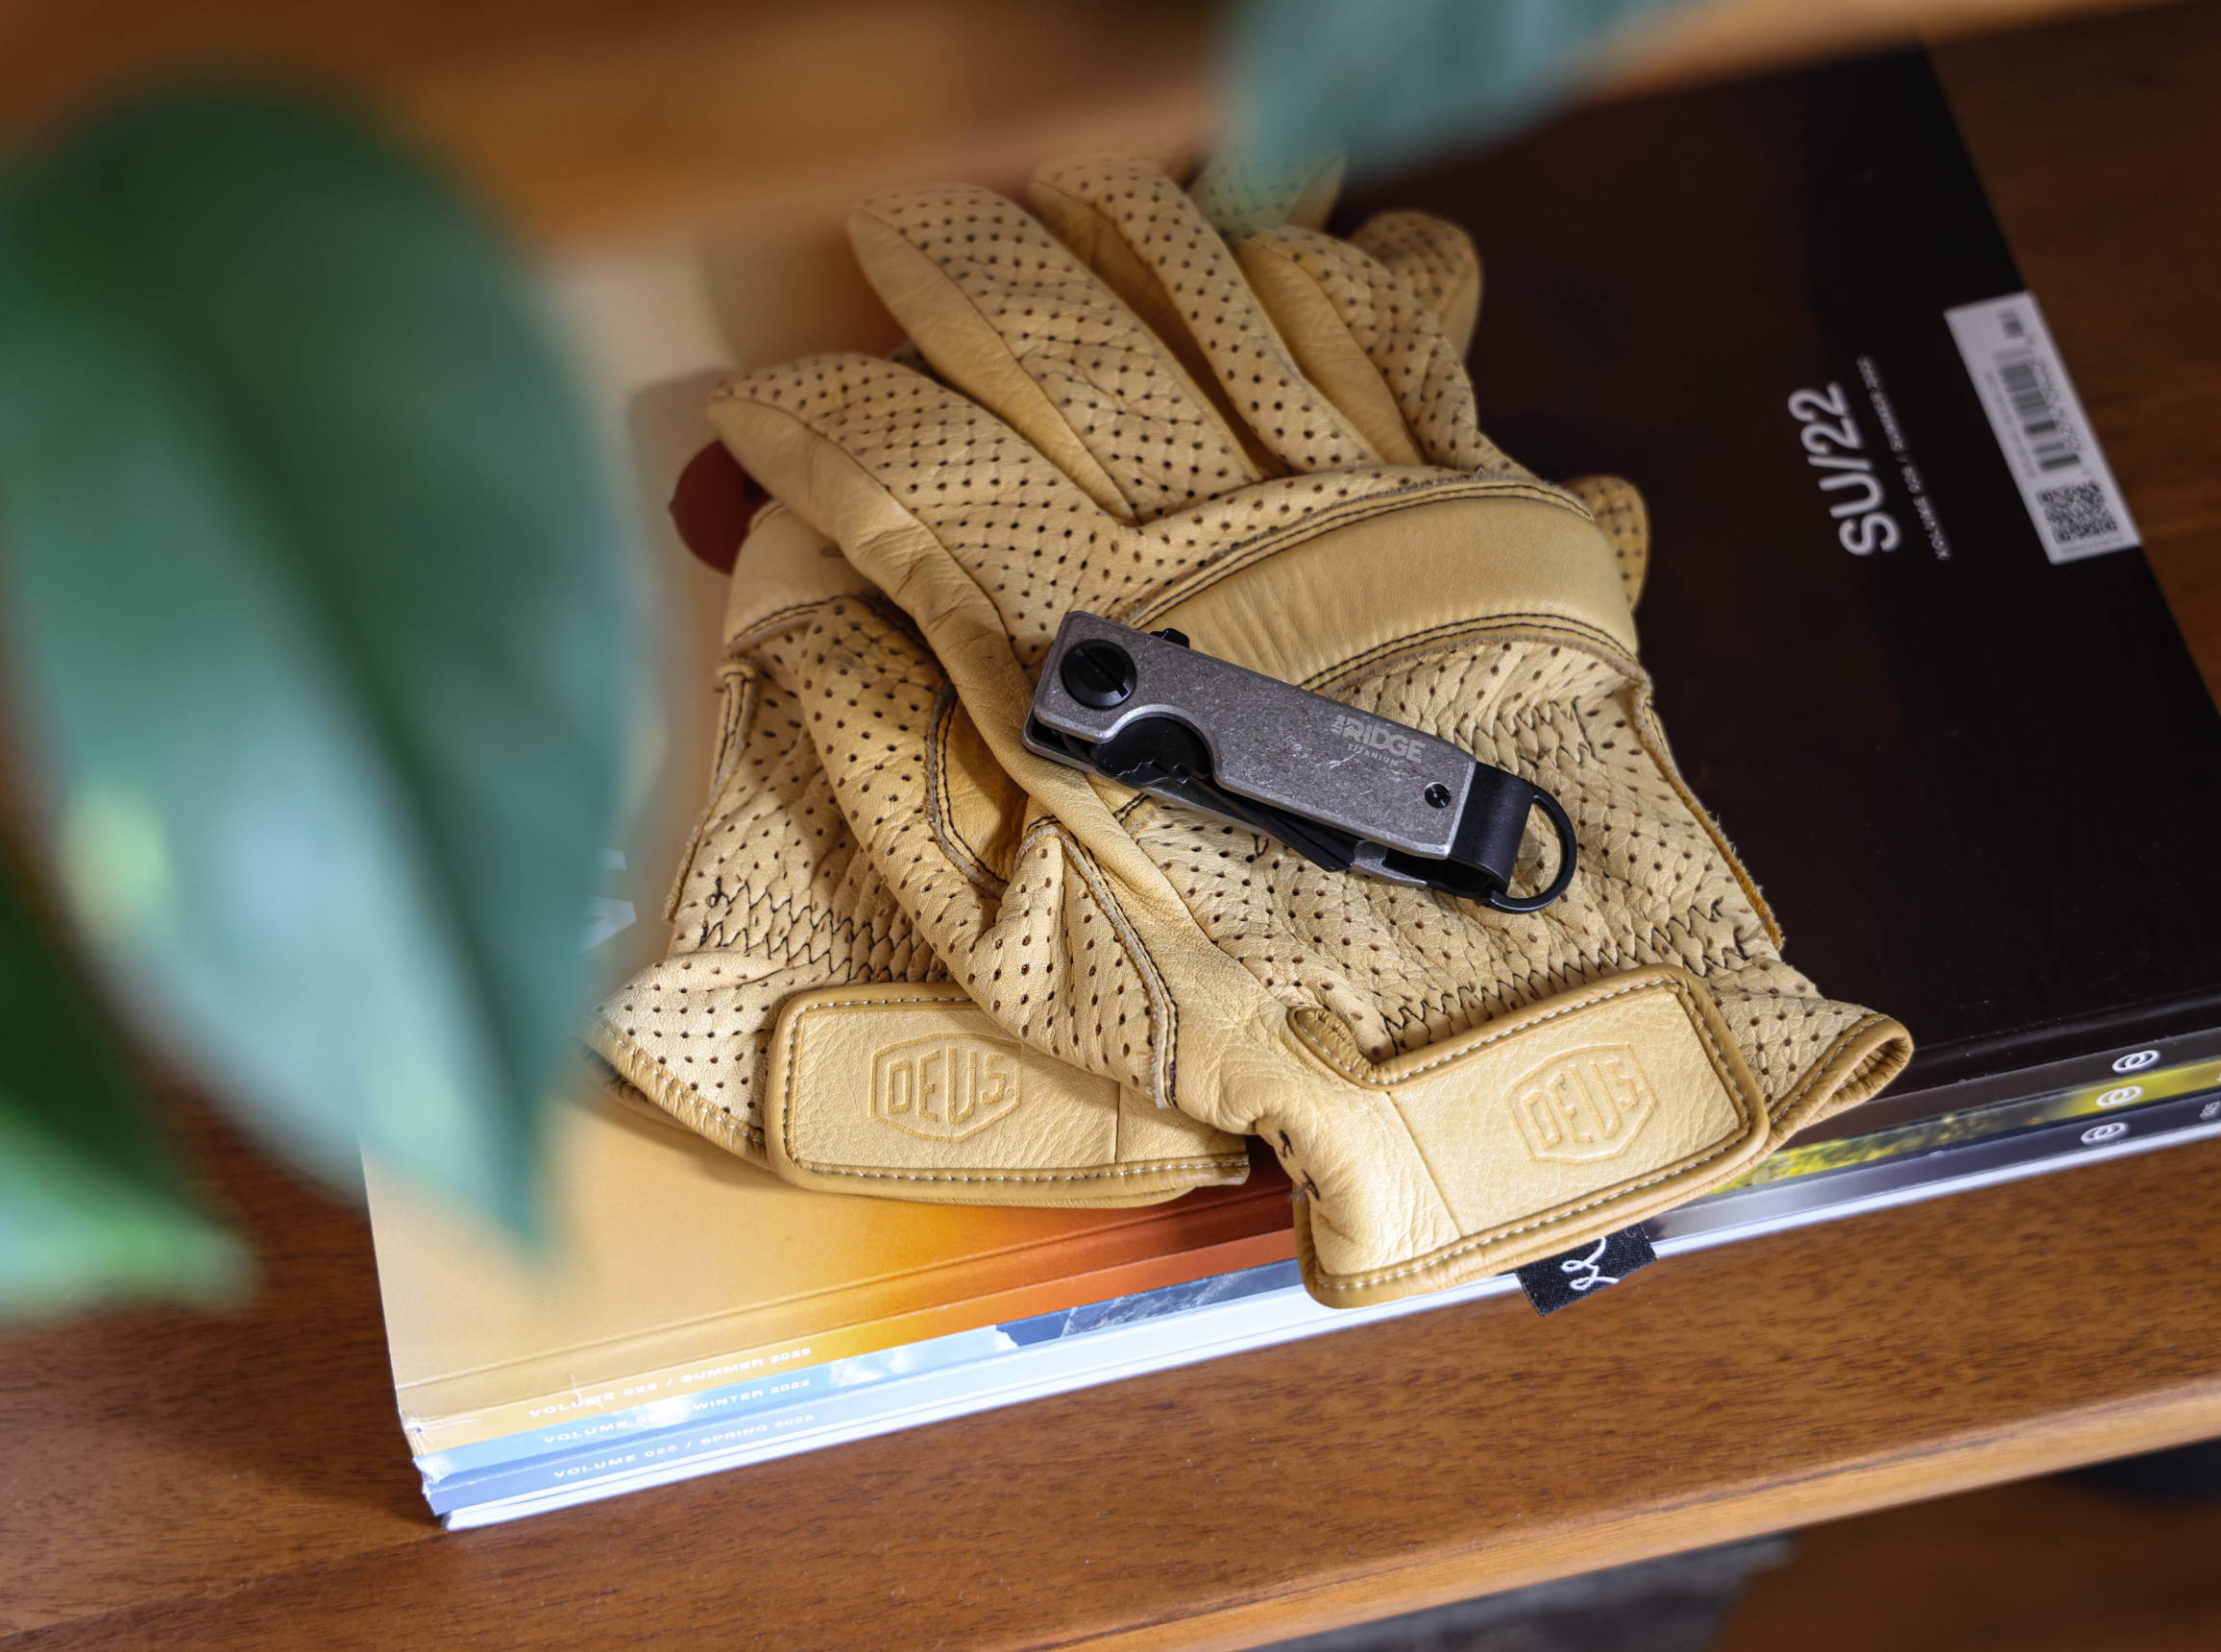 Ridge Stonewashed Titanium keycase on top of gloves